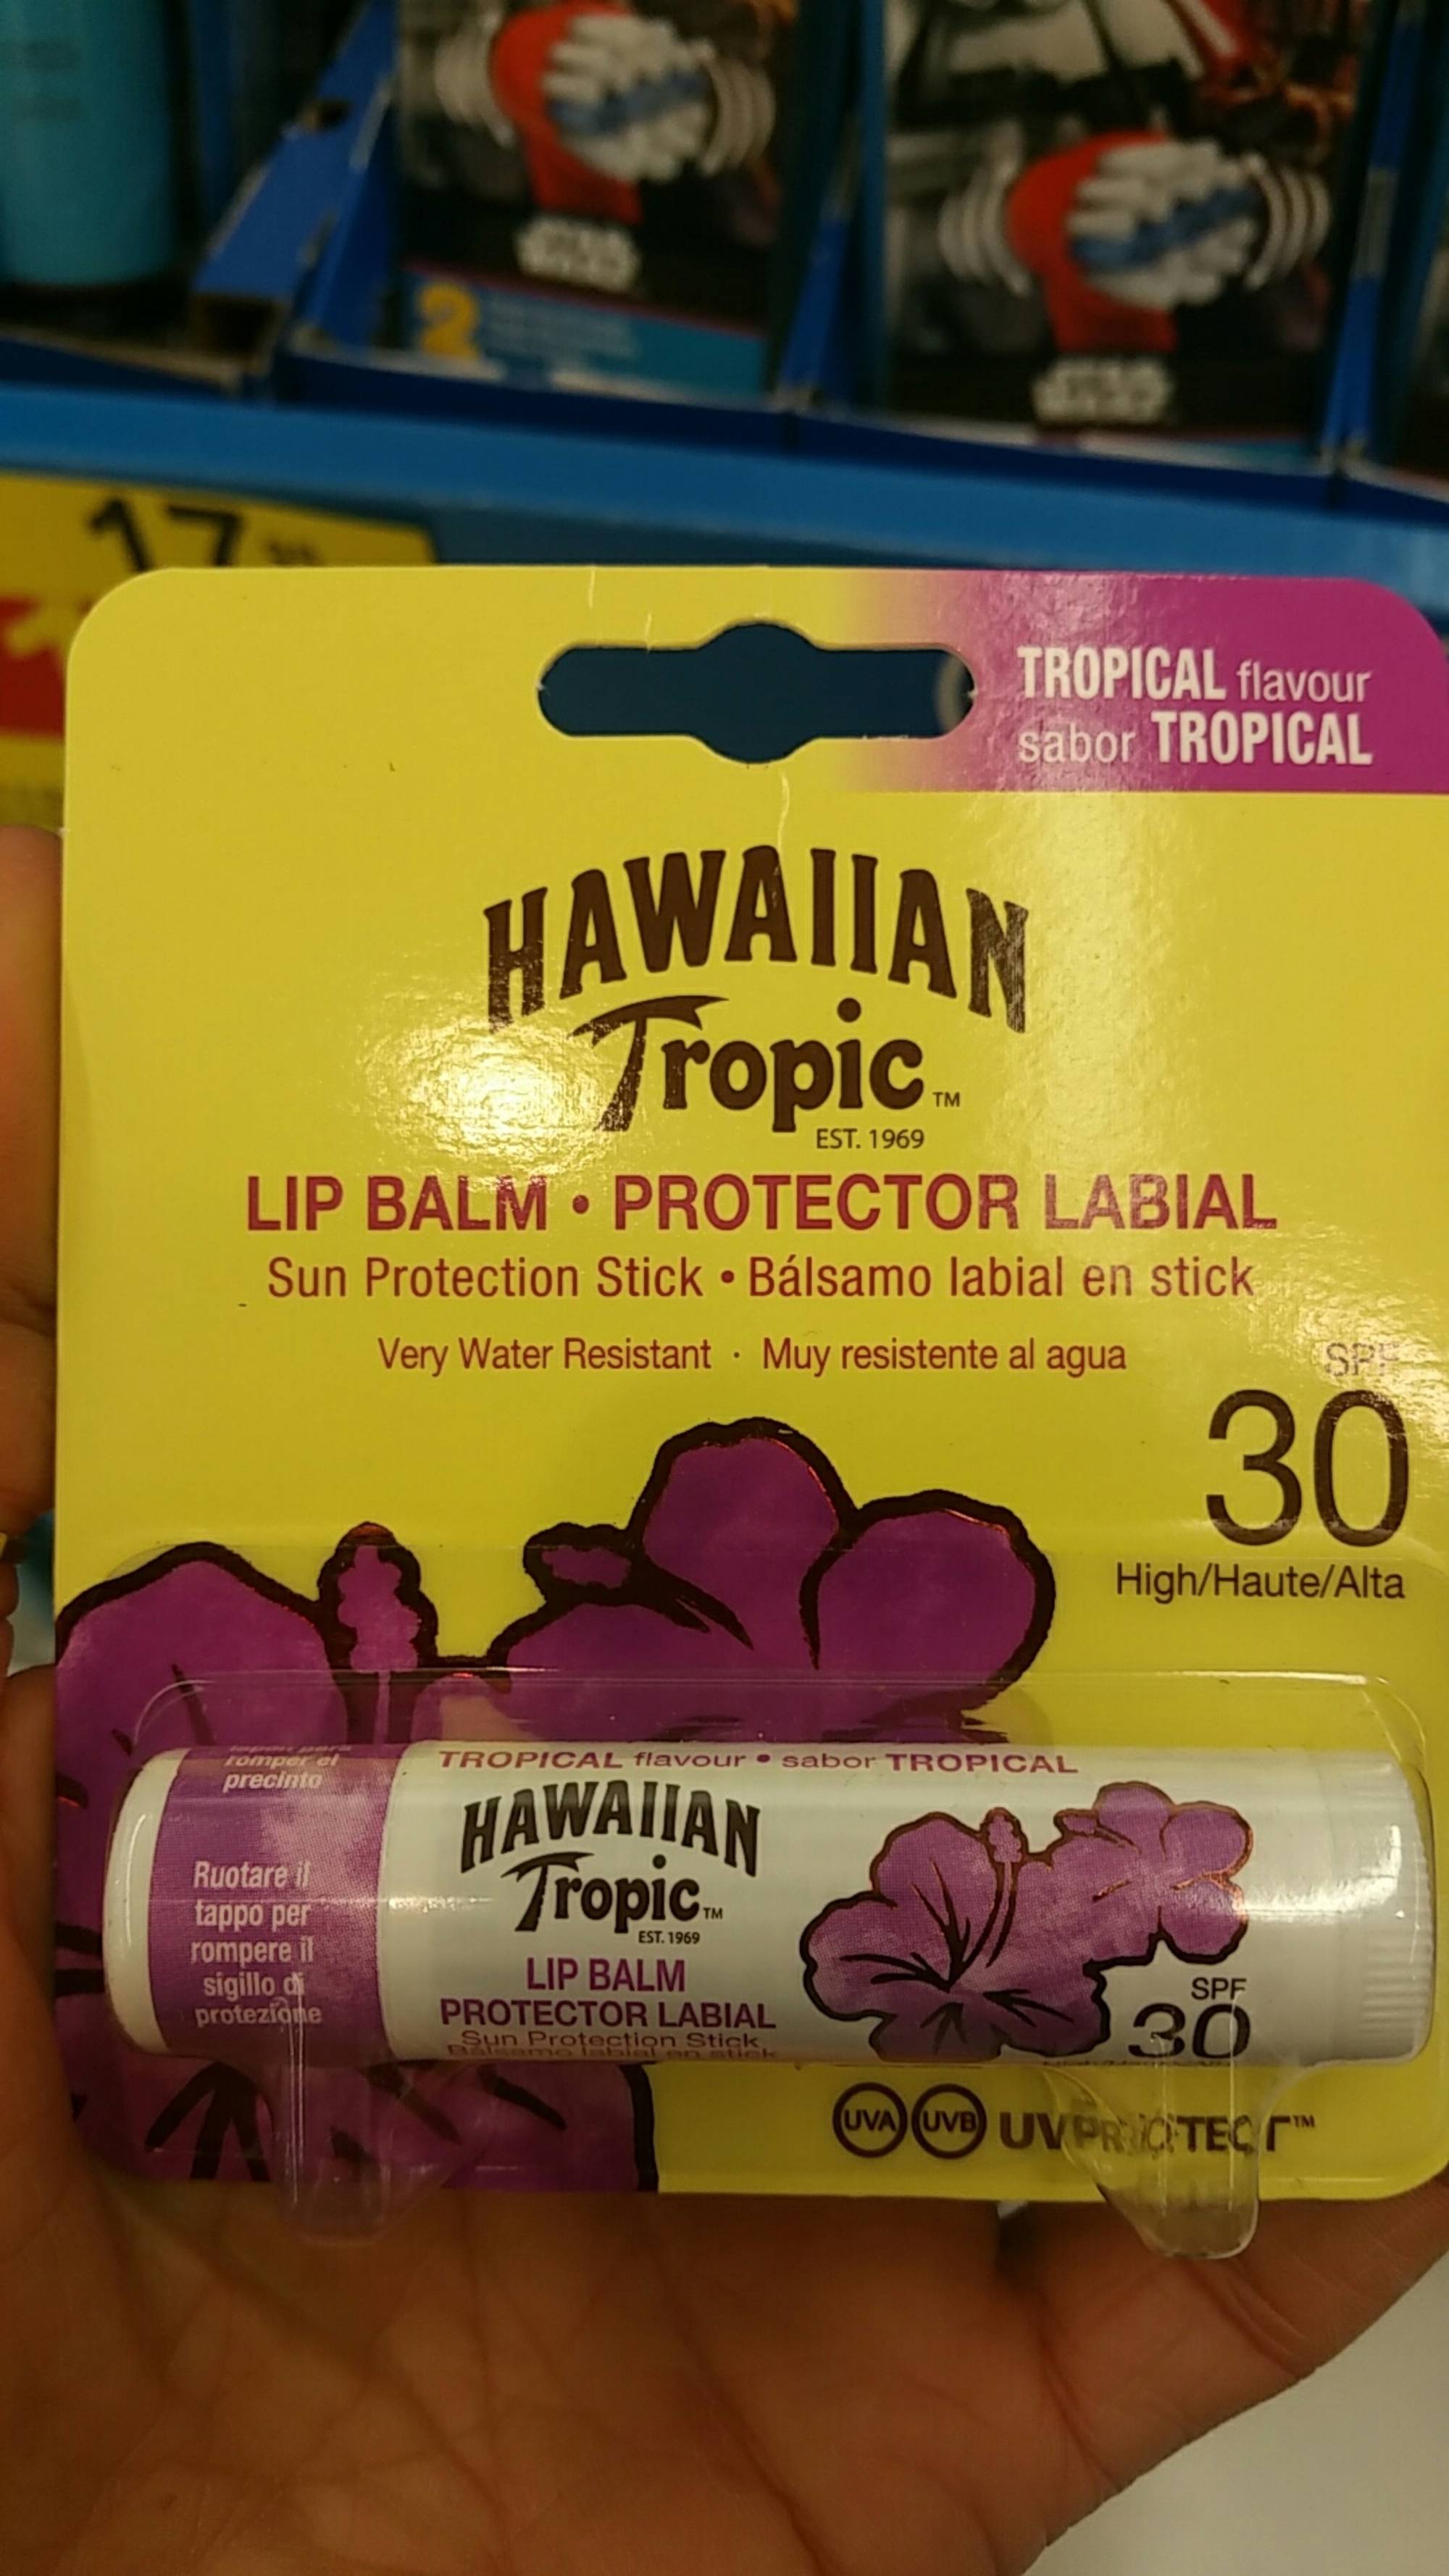 HAWAIIAN TROPIC - Lip balm - Protector labial spf 30